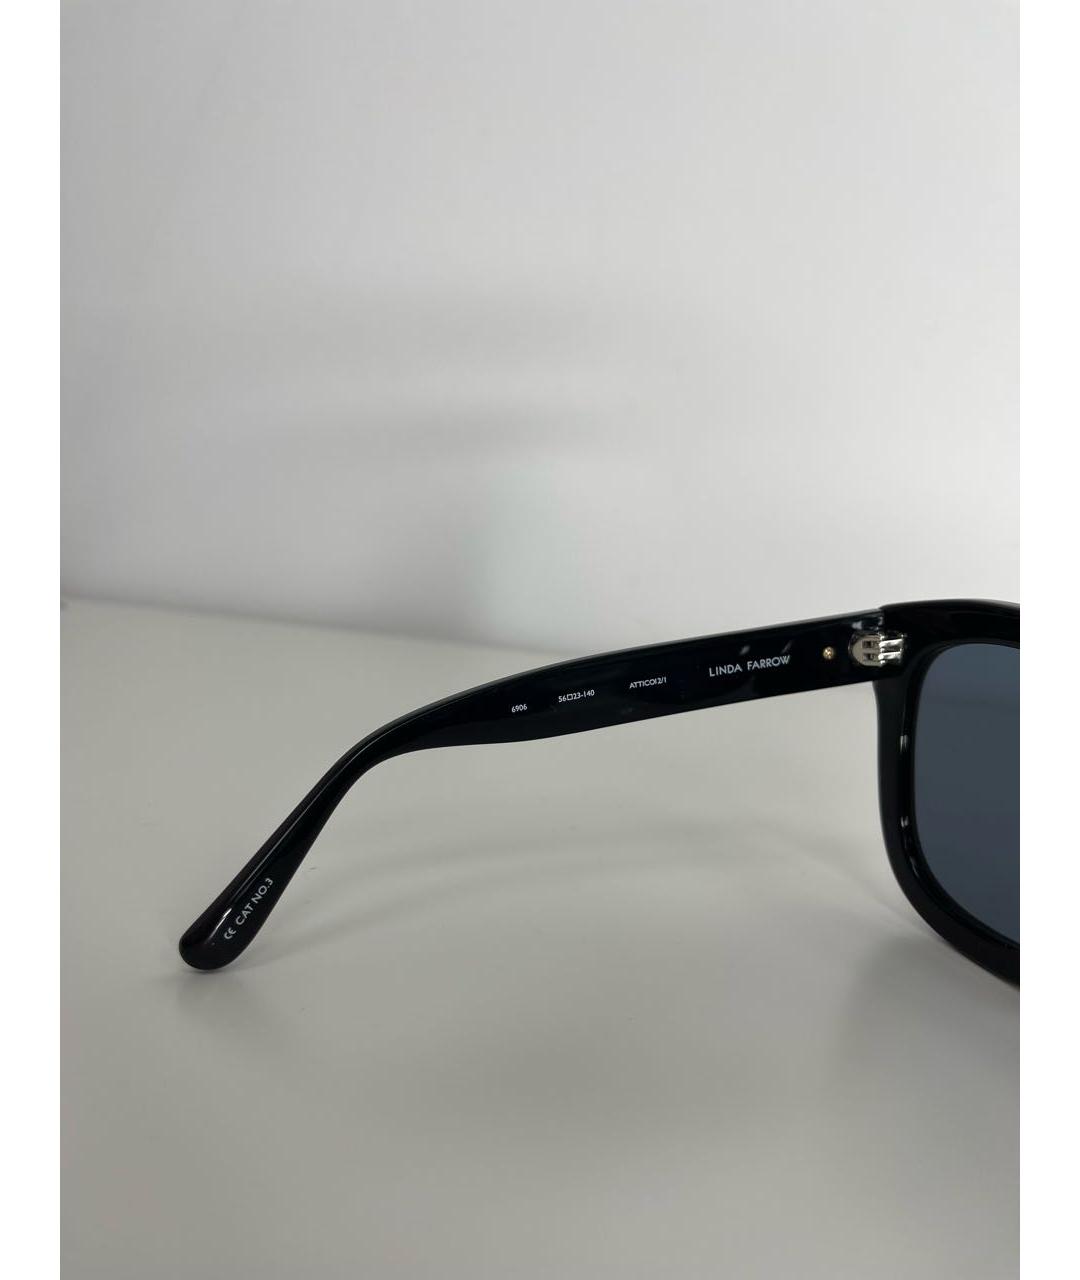 THE ATTICO Черные пластиковые солнцезащитные очки, фото 6